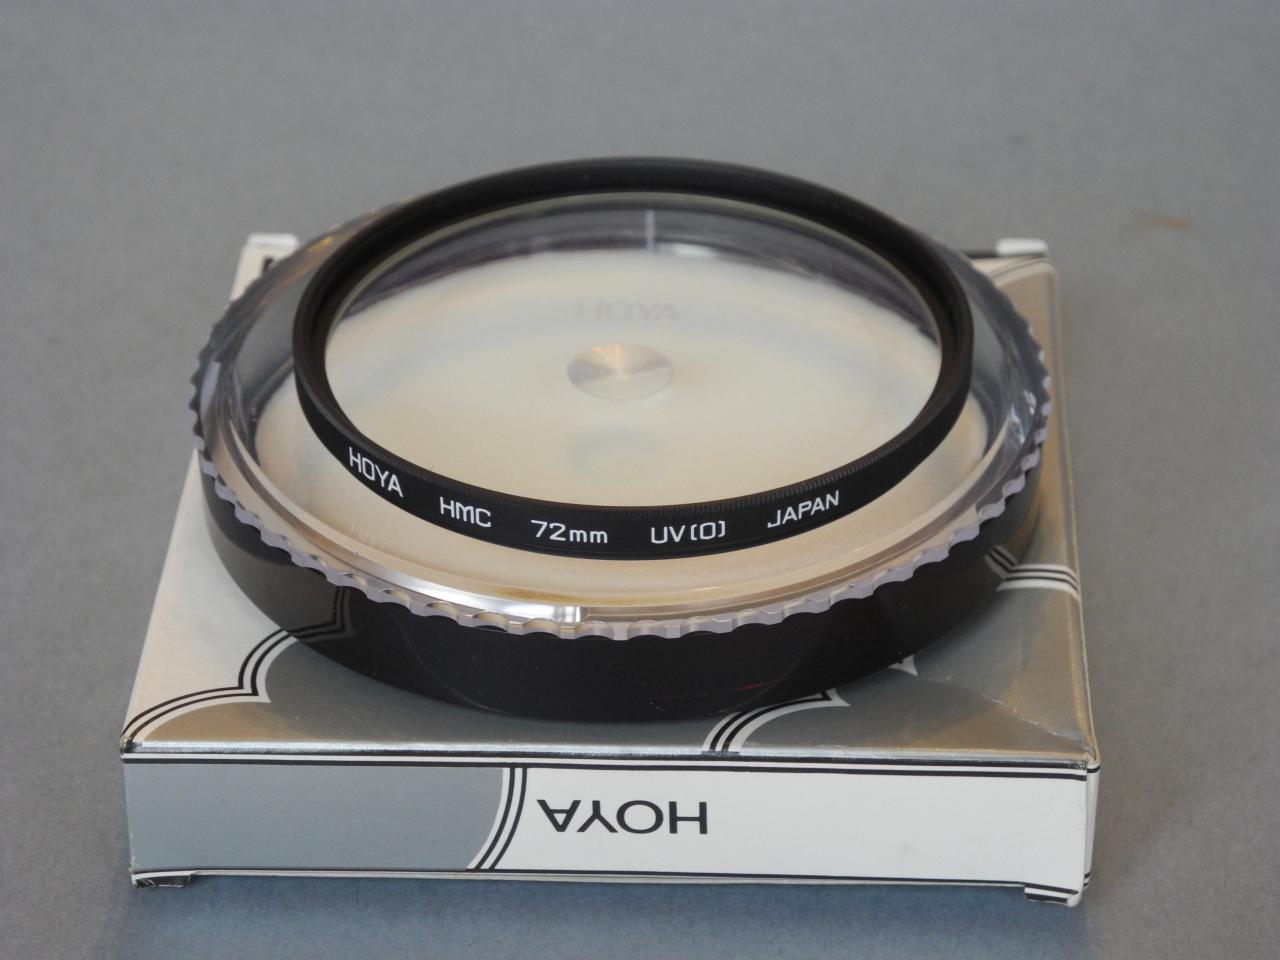 *Hoya filtre UV (o) 72mm*